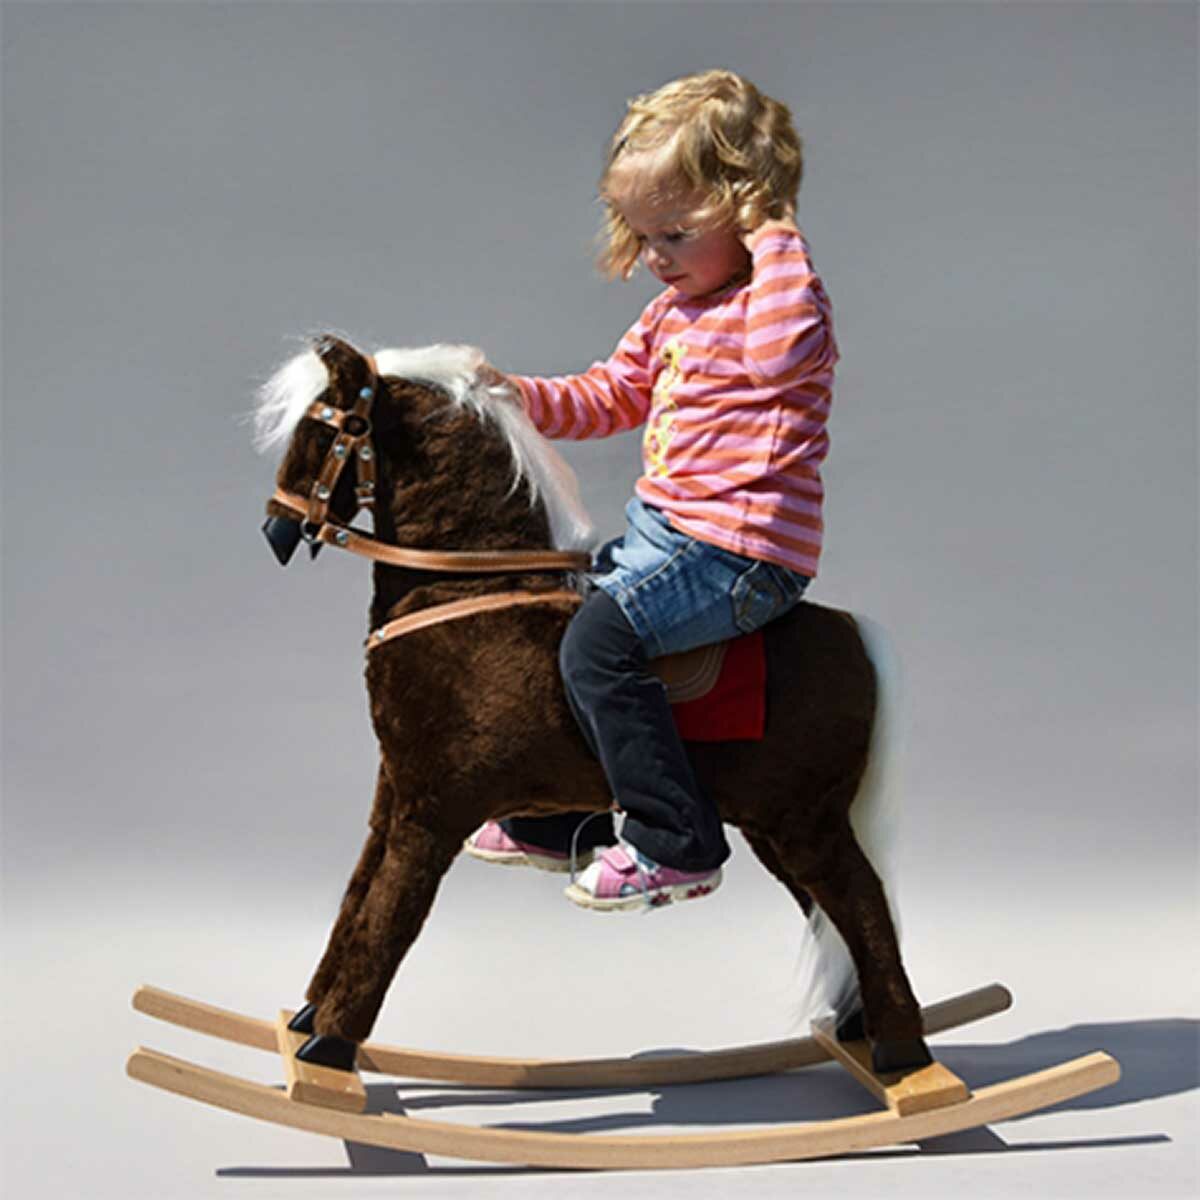 GLORIOSA rocking horse with vinyl saddle